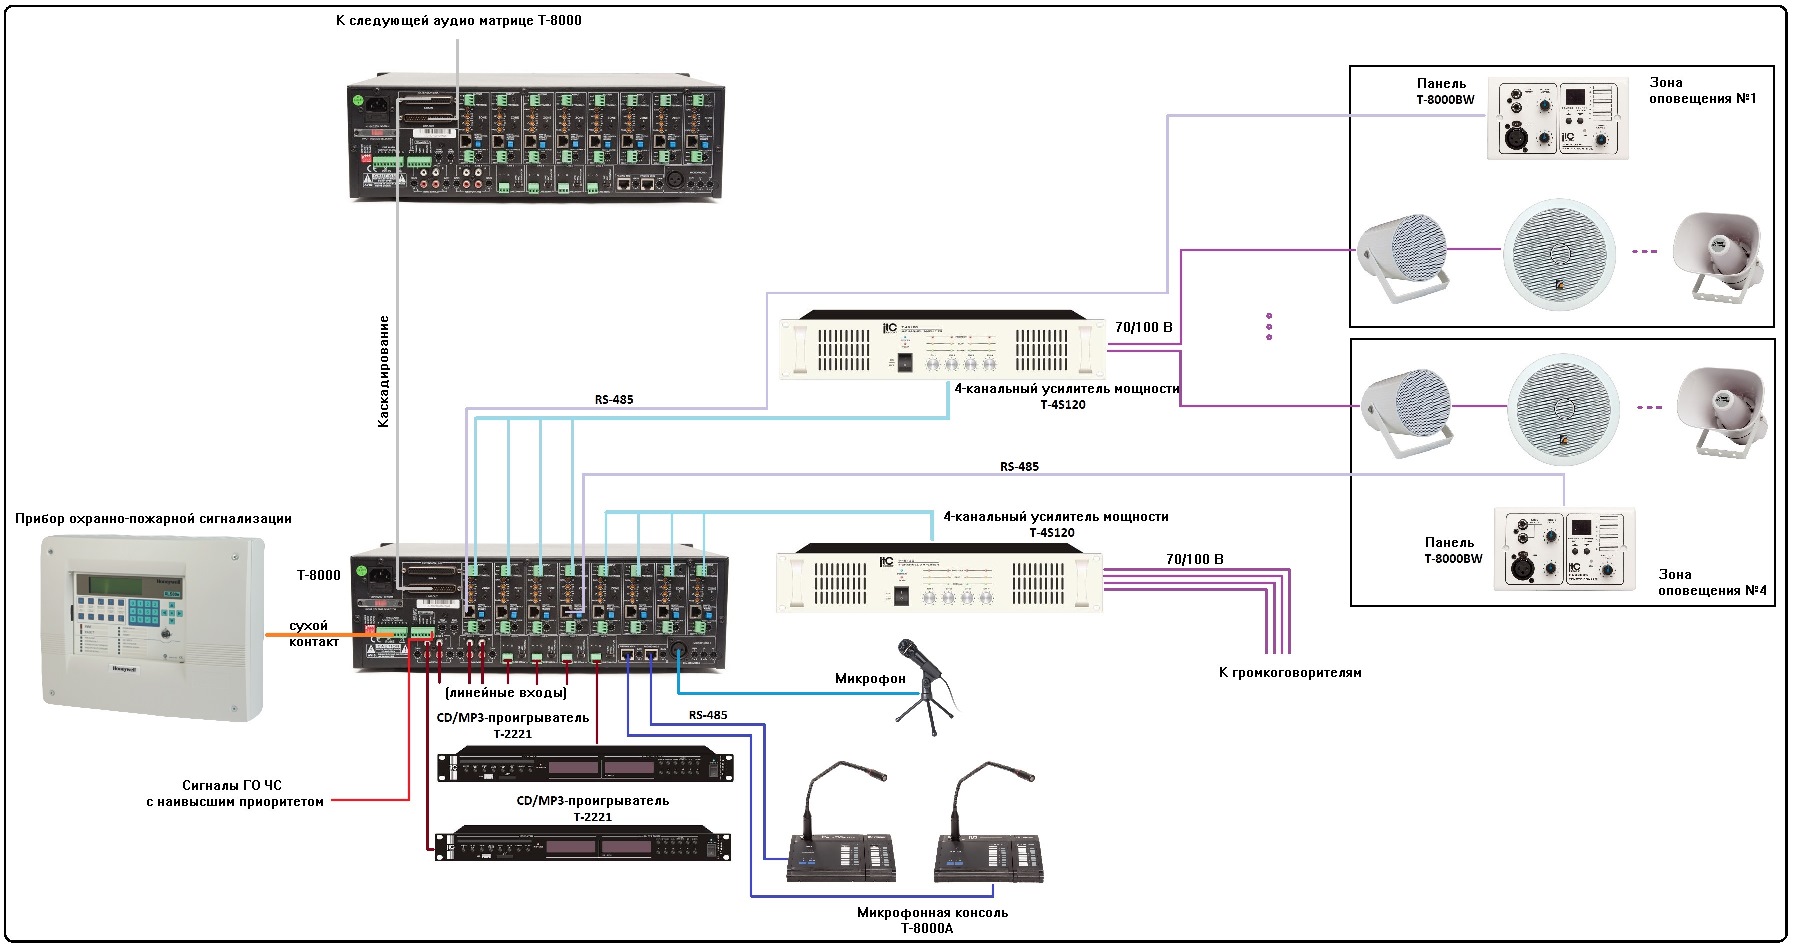 Схема подключения системы оповещения Т-8000